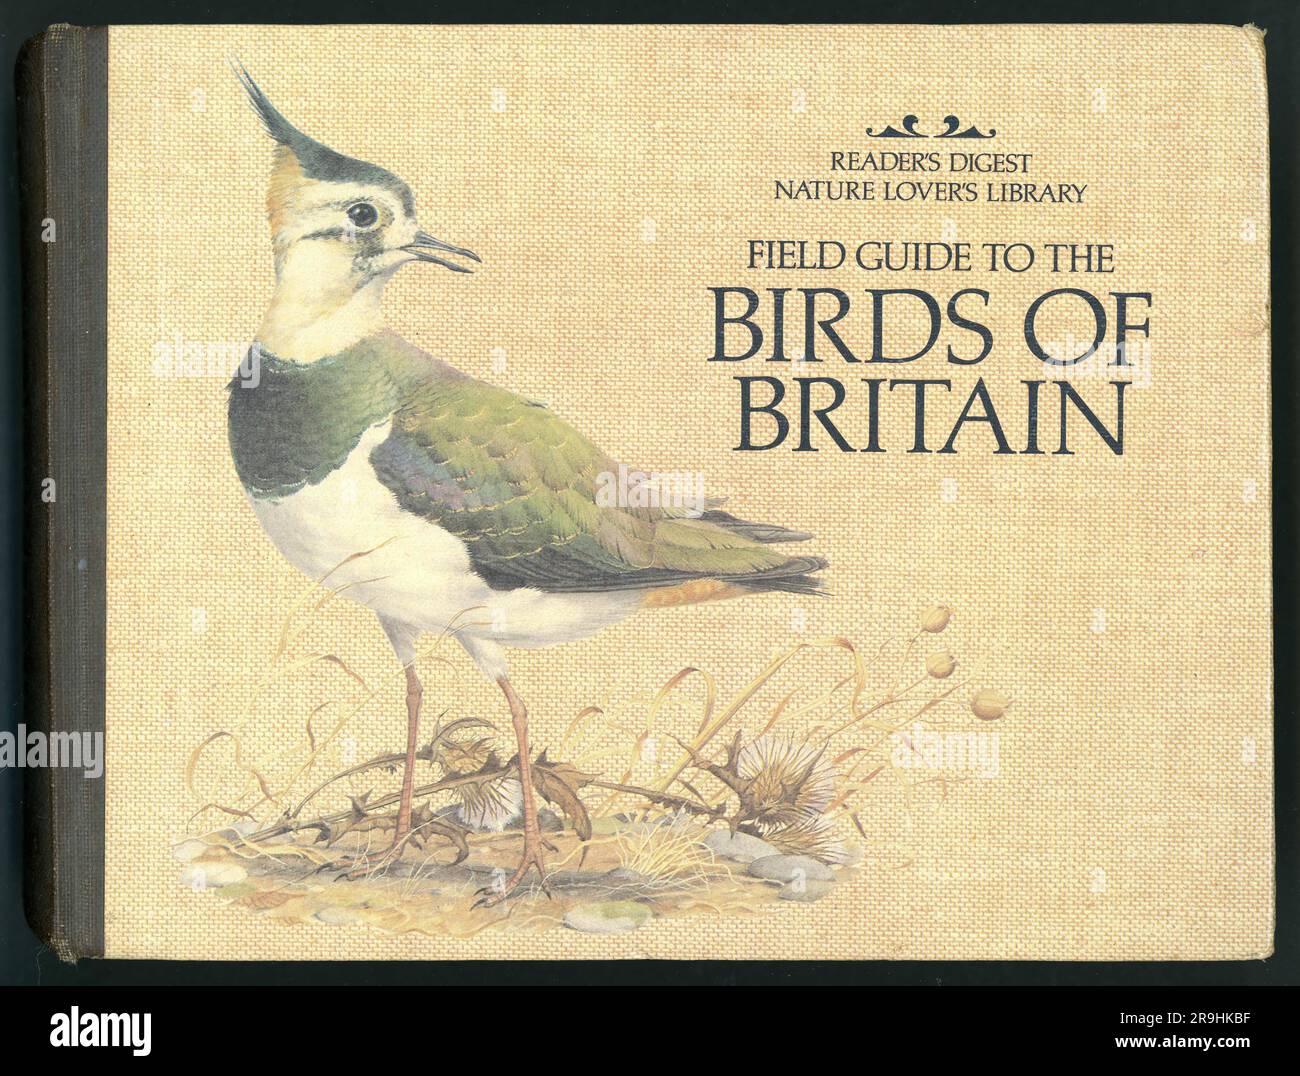 Original-Titelblatt aus den 1980er Jahren für den Reader's Digest Field Guide to the Birds of Britain, 1. Auflage, Titelseite mit Abbildung von Peter Barrett, veröffentlicht 1981 Stockfoto